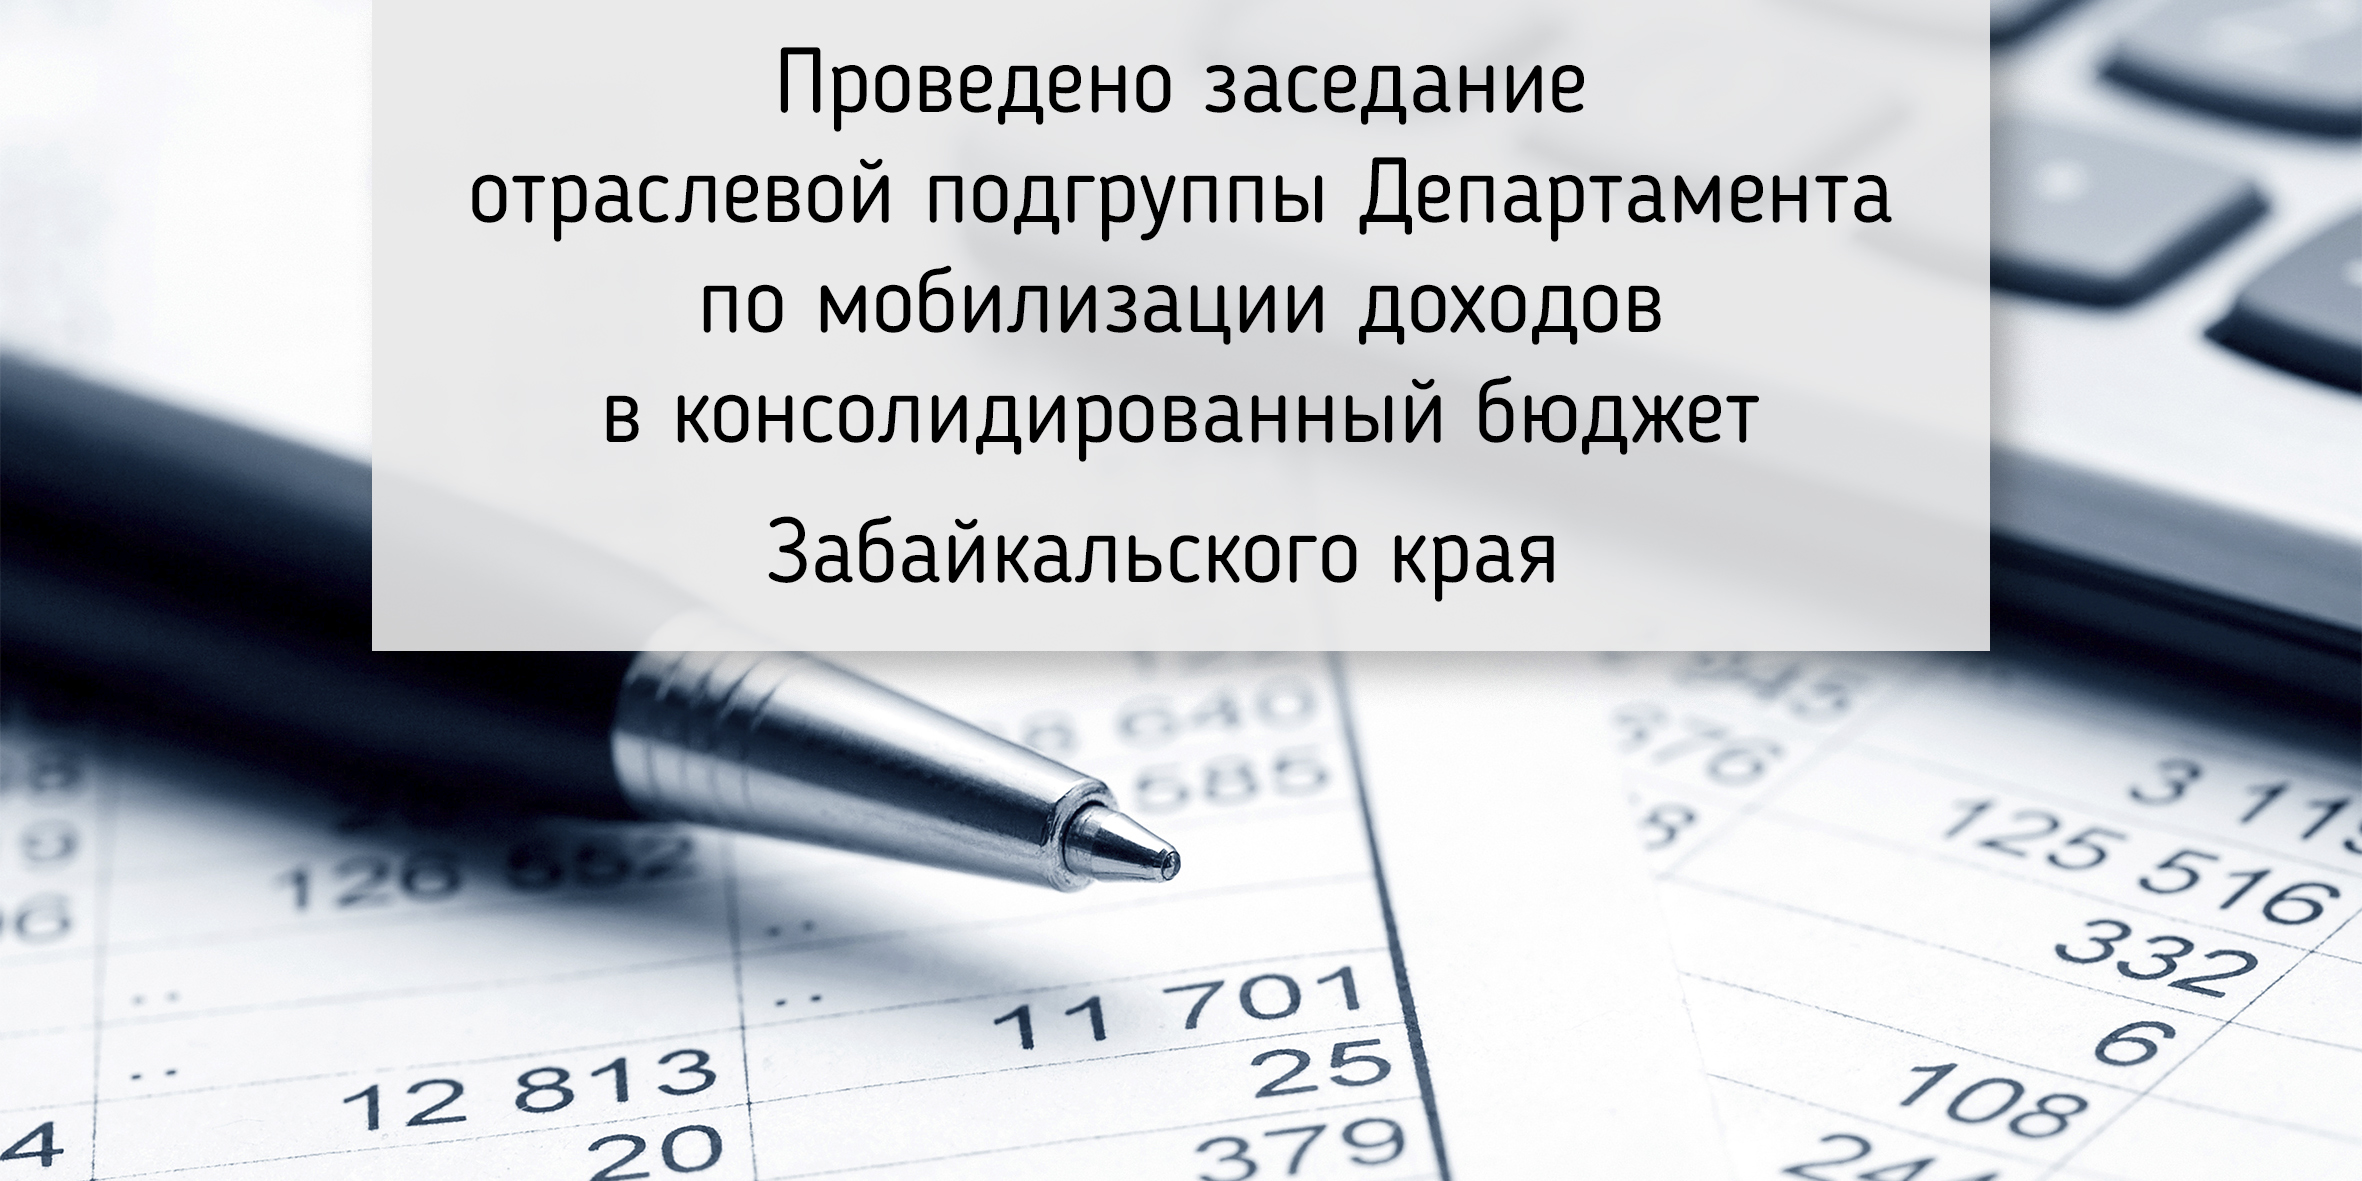 Проведено заседание отраслевой подгруппы Департамента по мобилизации доходов в консолидированный бюджет Забайкальского края